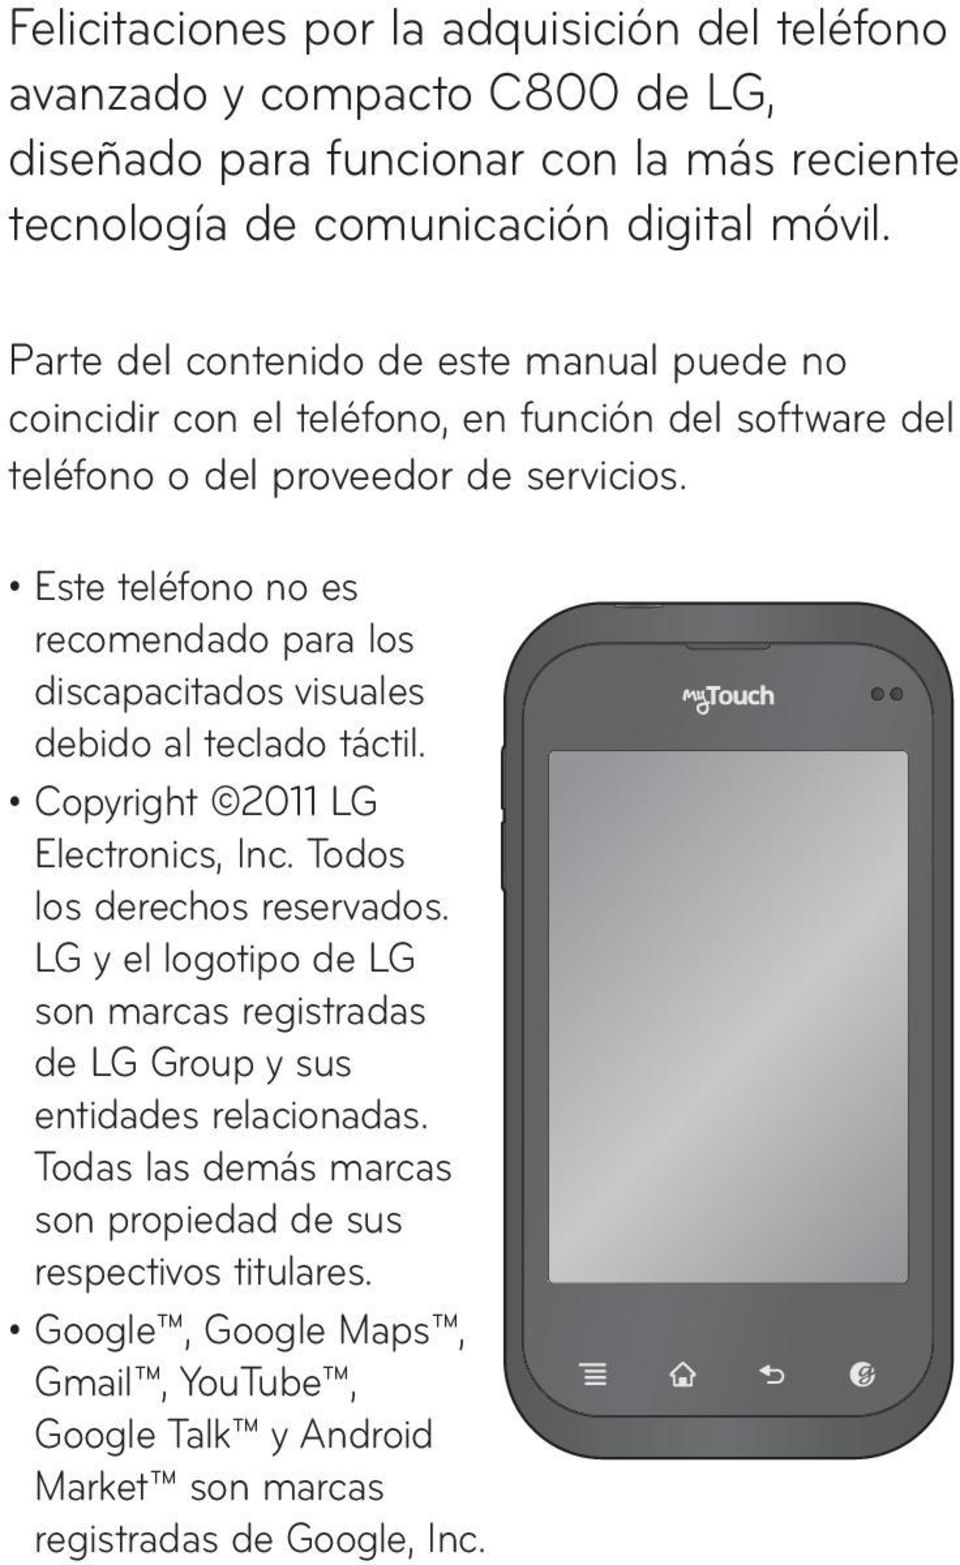 Este teléfono no es recomendado para los discapacitados visuales debido al teclado táctil. Copyright 2011 LG Electronics, Inc. Todos los derechos reservados.